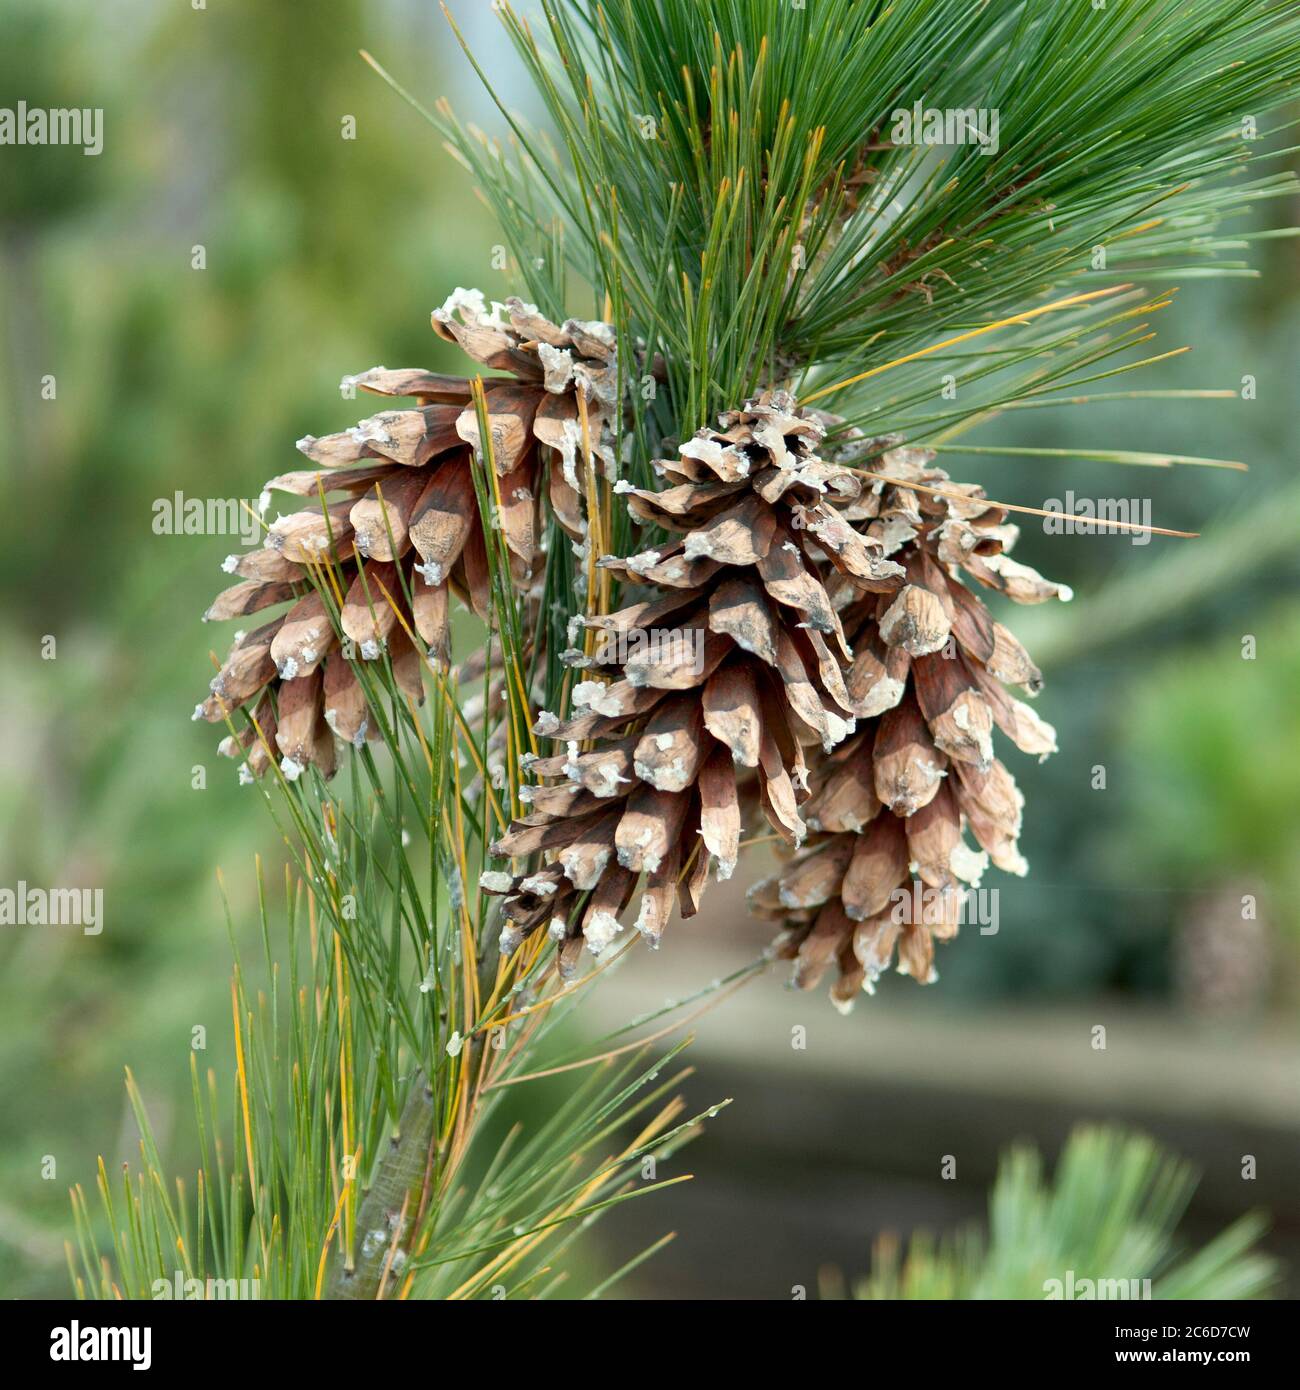 Schwerins Kiefer, Pinus schwerinii, Schwerins pine, Pinus schwerinii Stock Photo